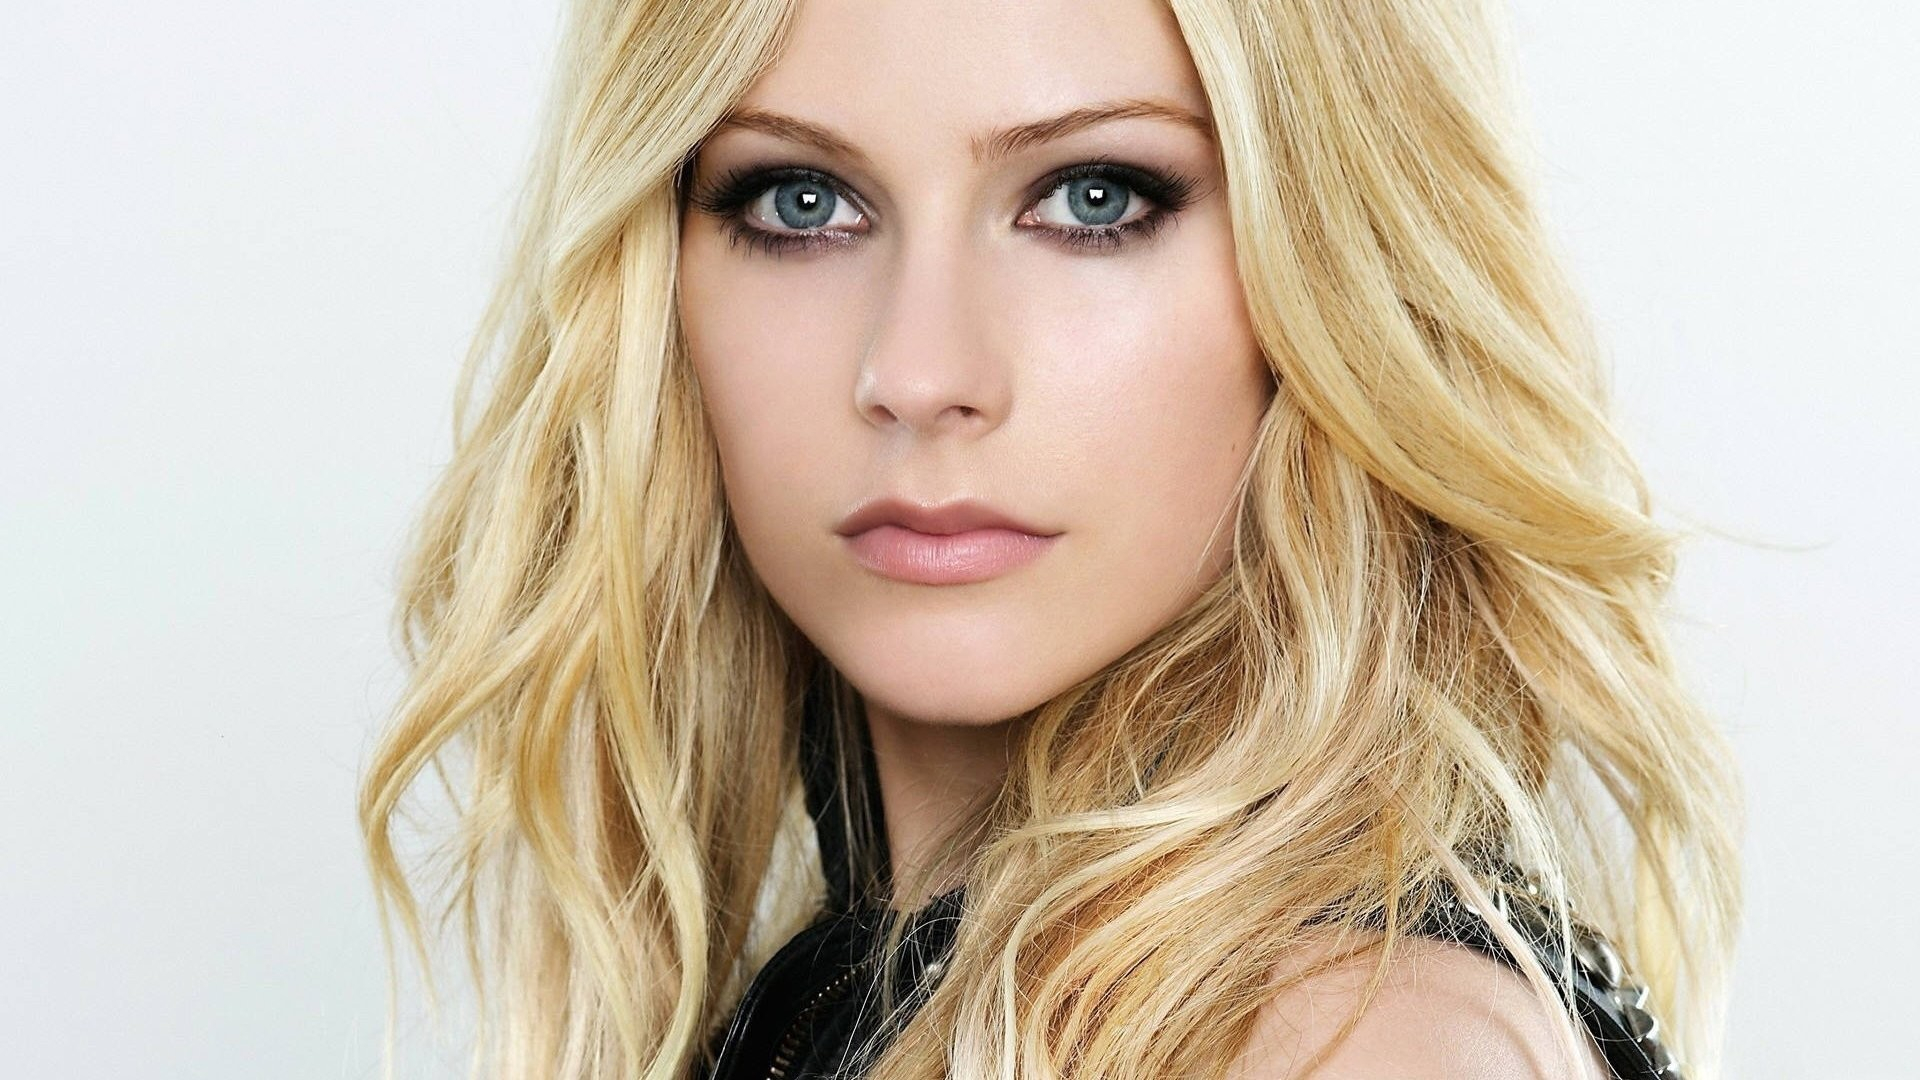 Makeup For Blue Eyes And Blonde Hair Singer Celebrity Blue Eyes Avril Lavigne Makeup Blonde